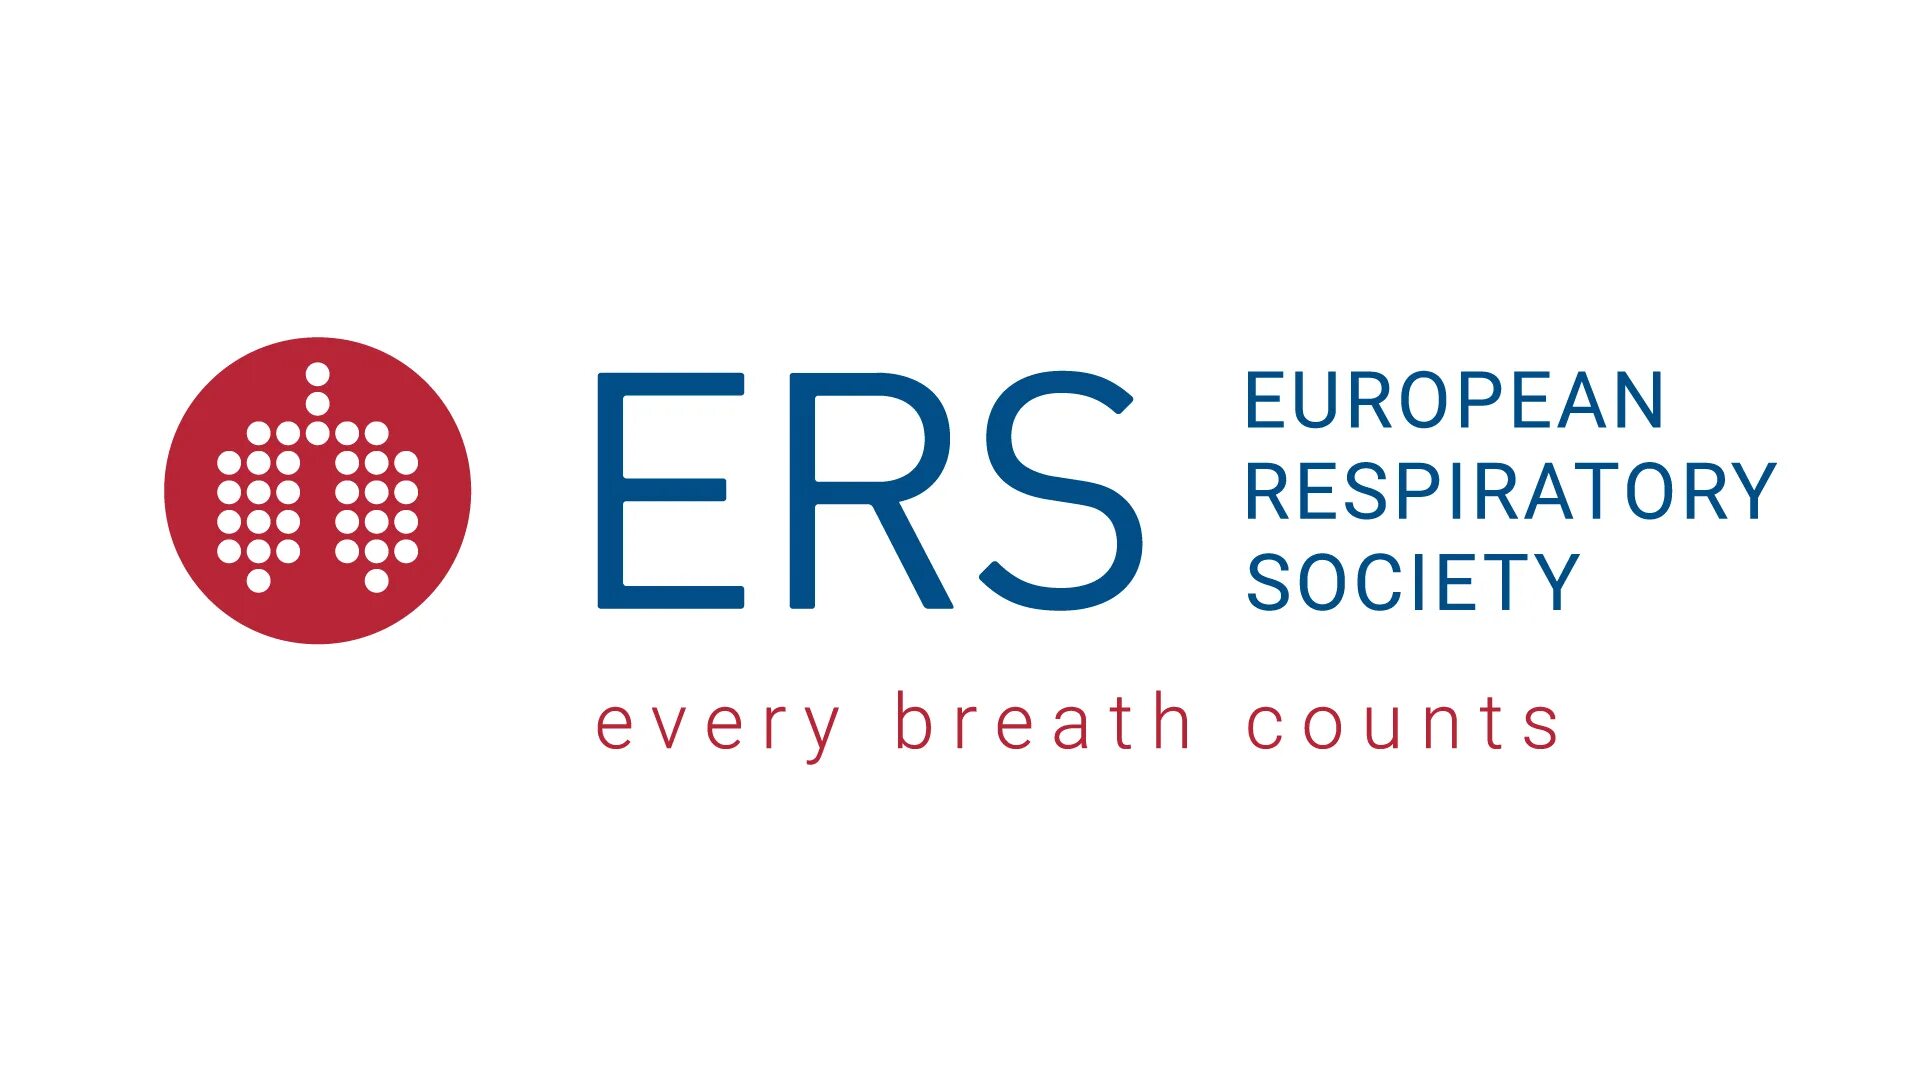 European society. Европейское респираторное общество. Ers логотип. Российское респираторное общество логотип. EFC европейское общество.